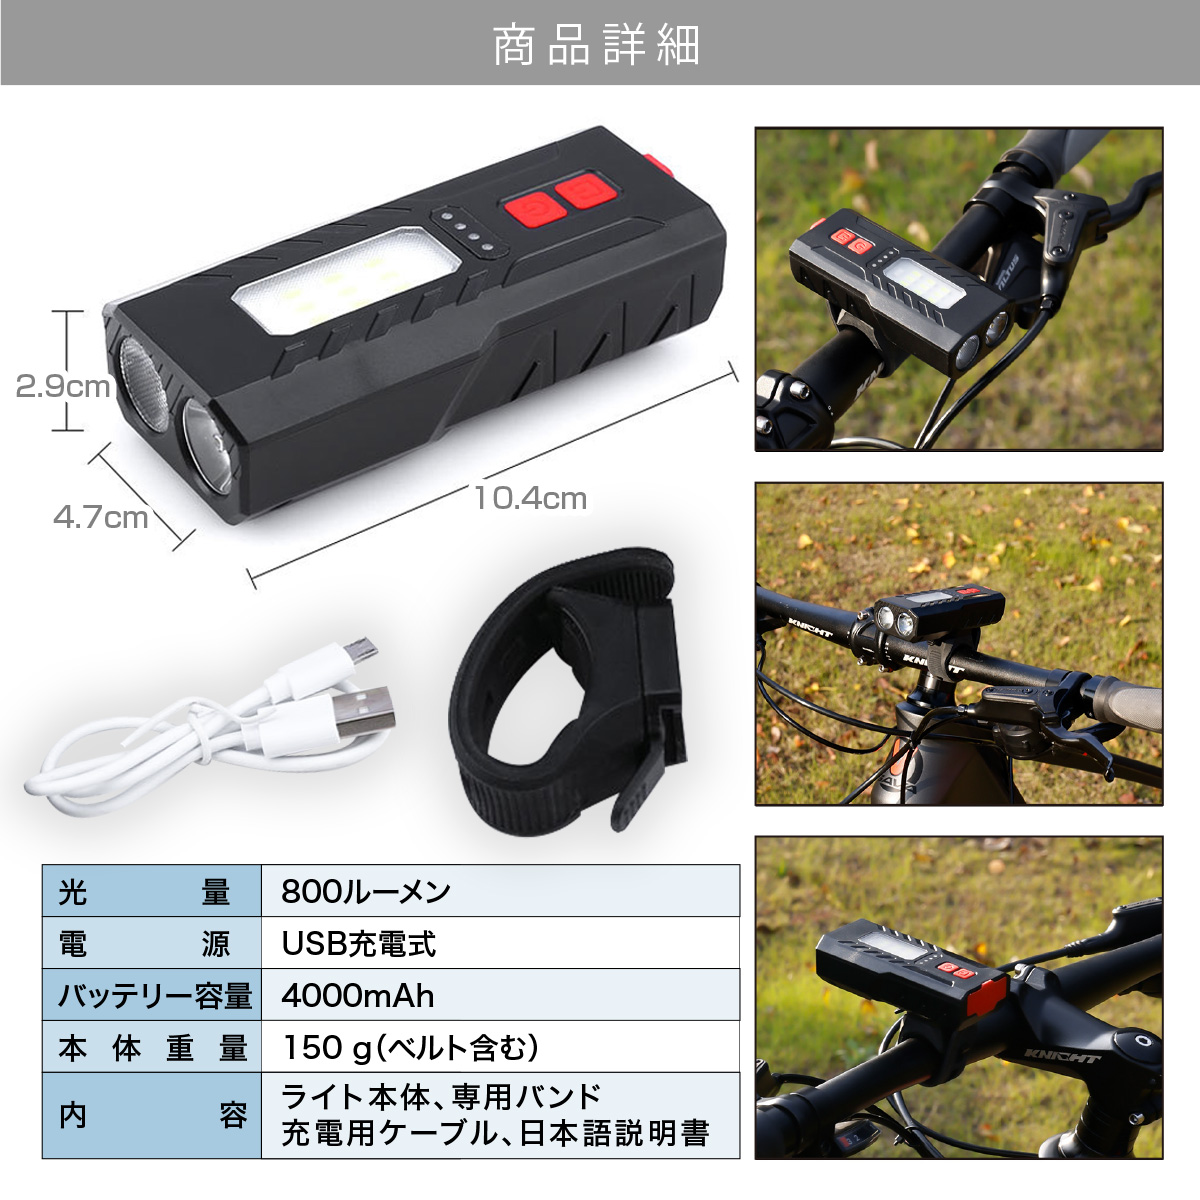 自転車 ライト 自転車ライト usb充電 明るい 最強 LED 防水 USB充電式 クロスバイク ロードバイク